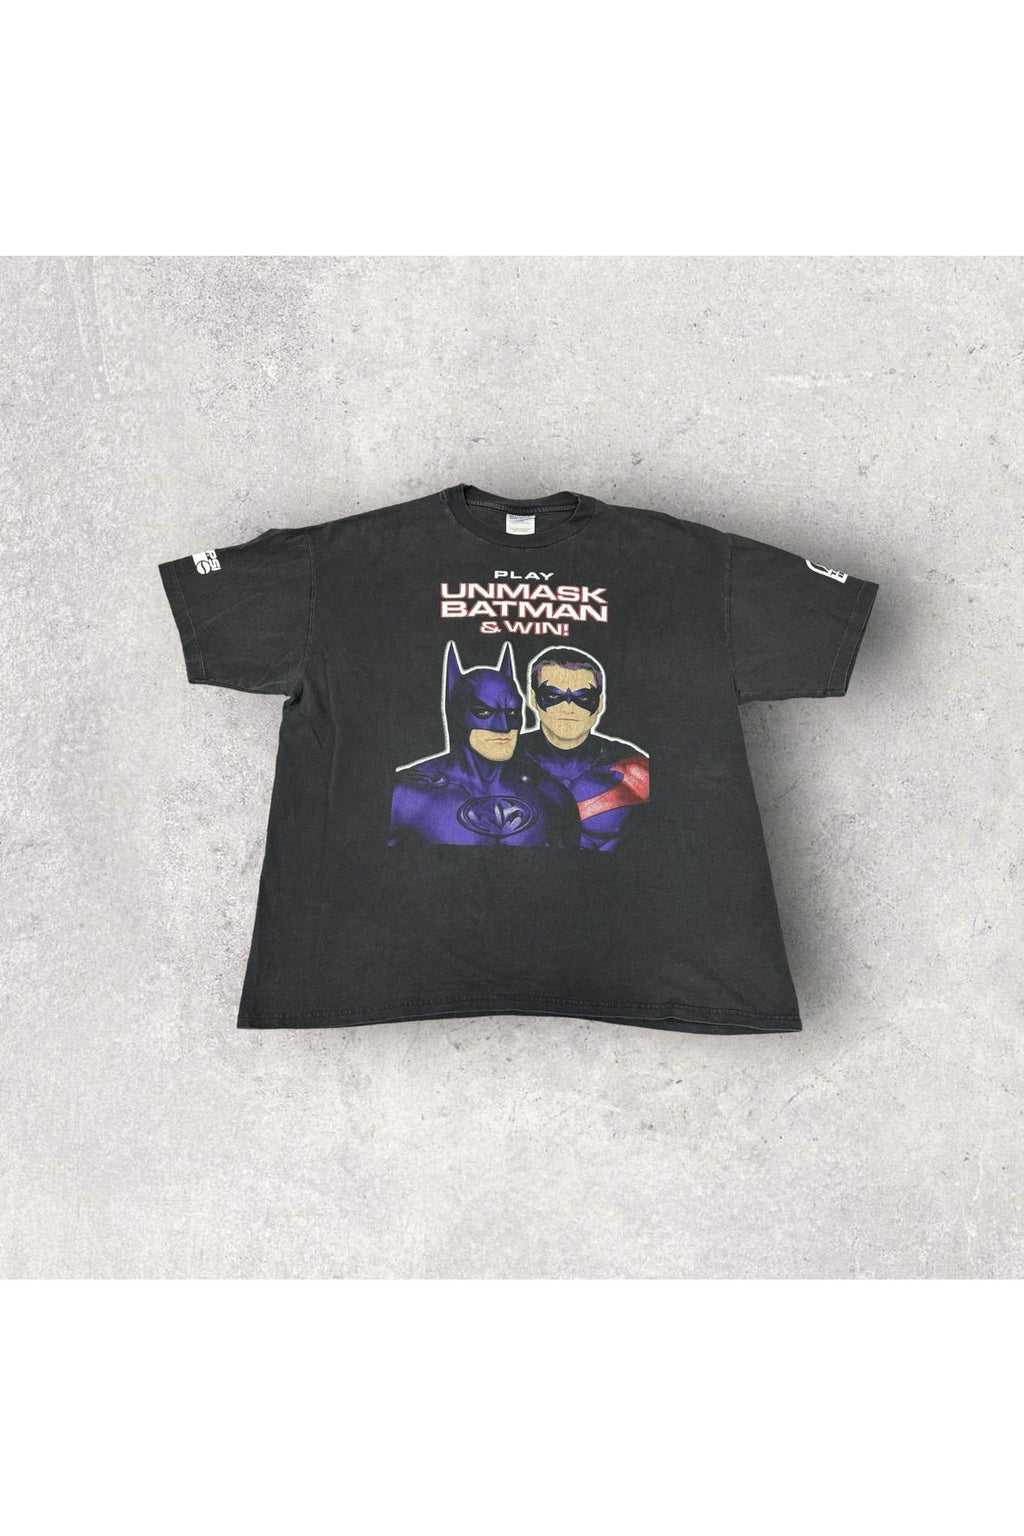 Vintage 1997 DC Comics Batman & Robin Unmask Batman Taco Bell Promo Tee- XL